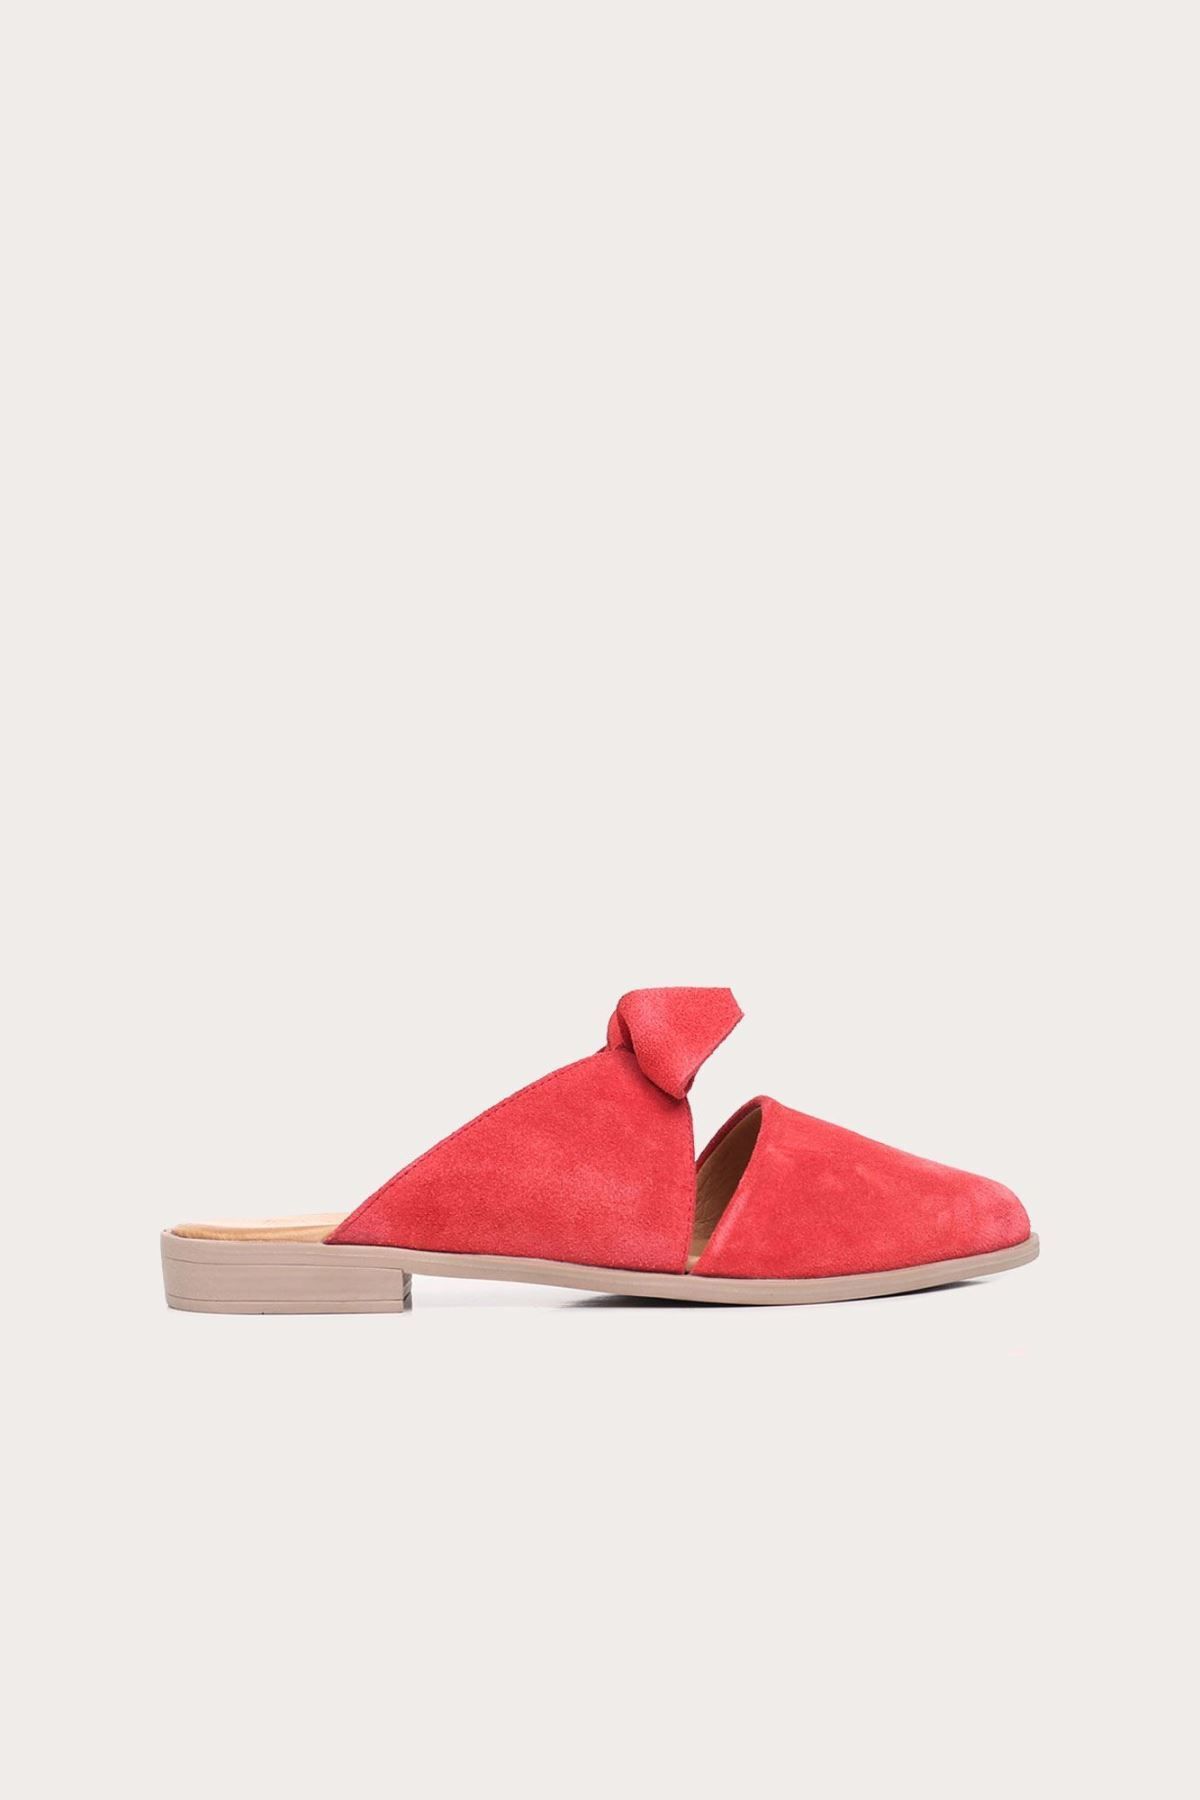 BUENO Shoes Kırmızı Süet Kadın Düz Terlik